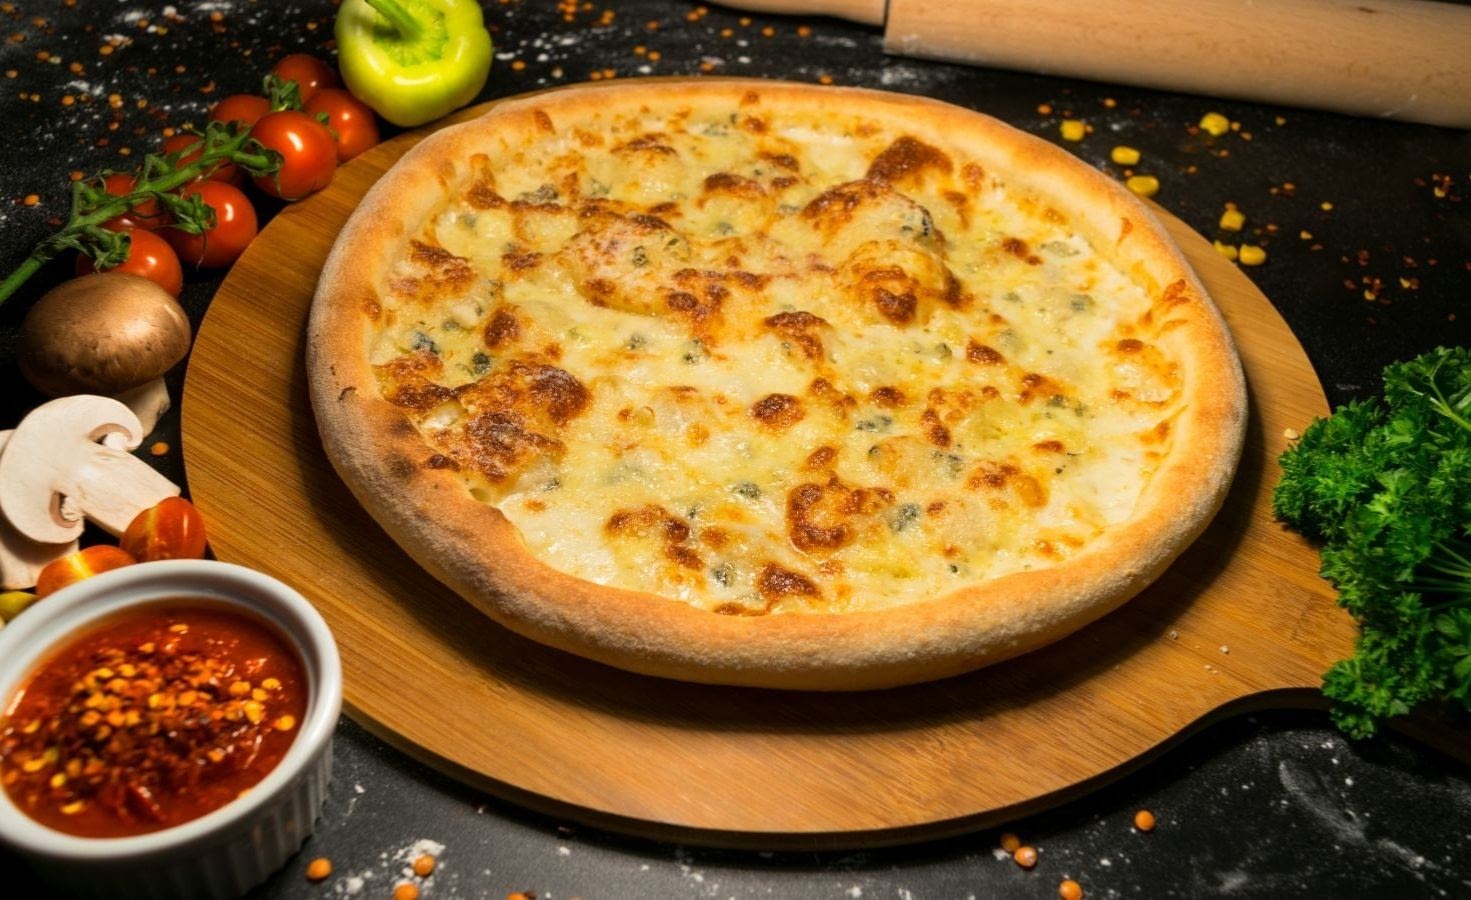 Pizza Quatro Formagi